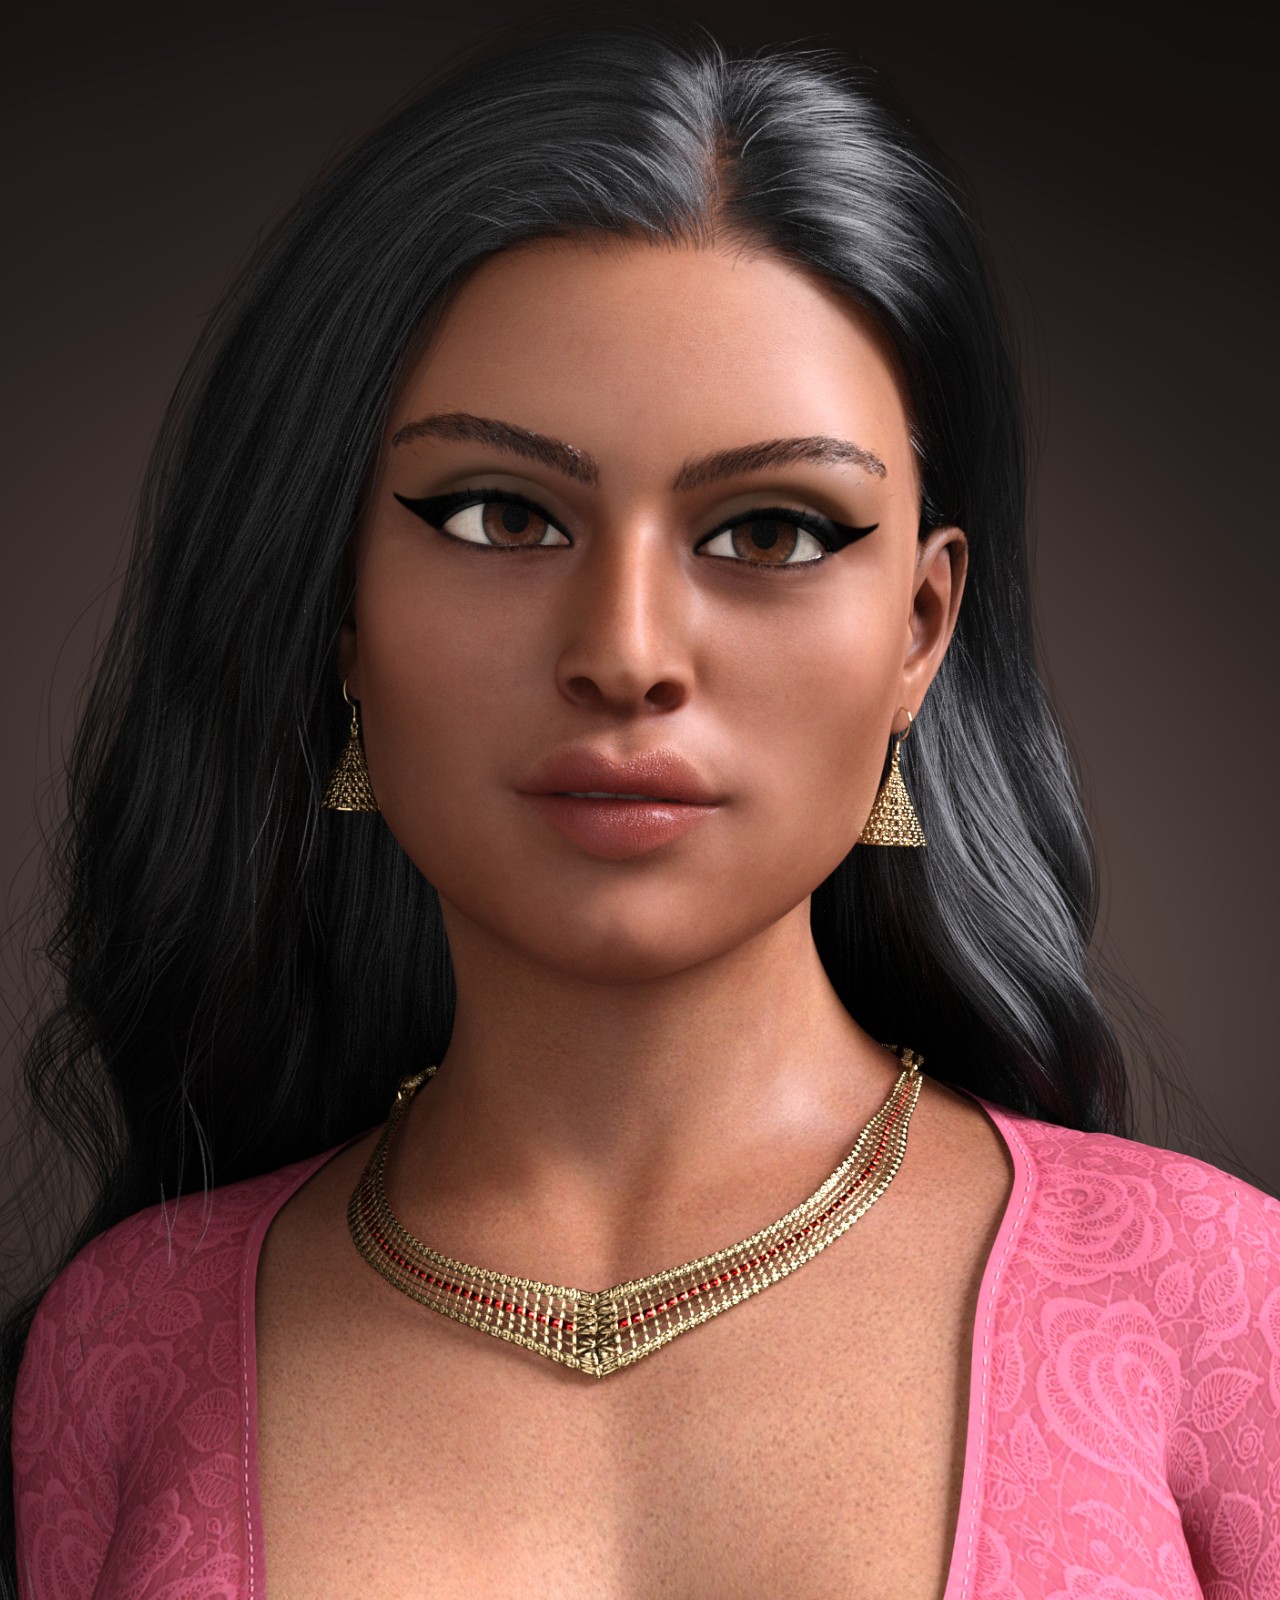 Aisha for Genesis 8 Female by: Ennushka, 3D Models by Daz 3D